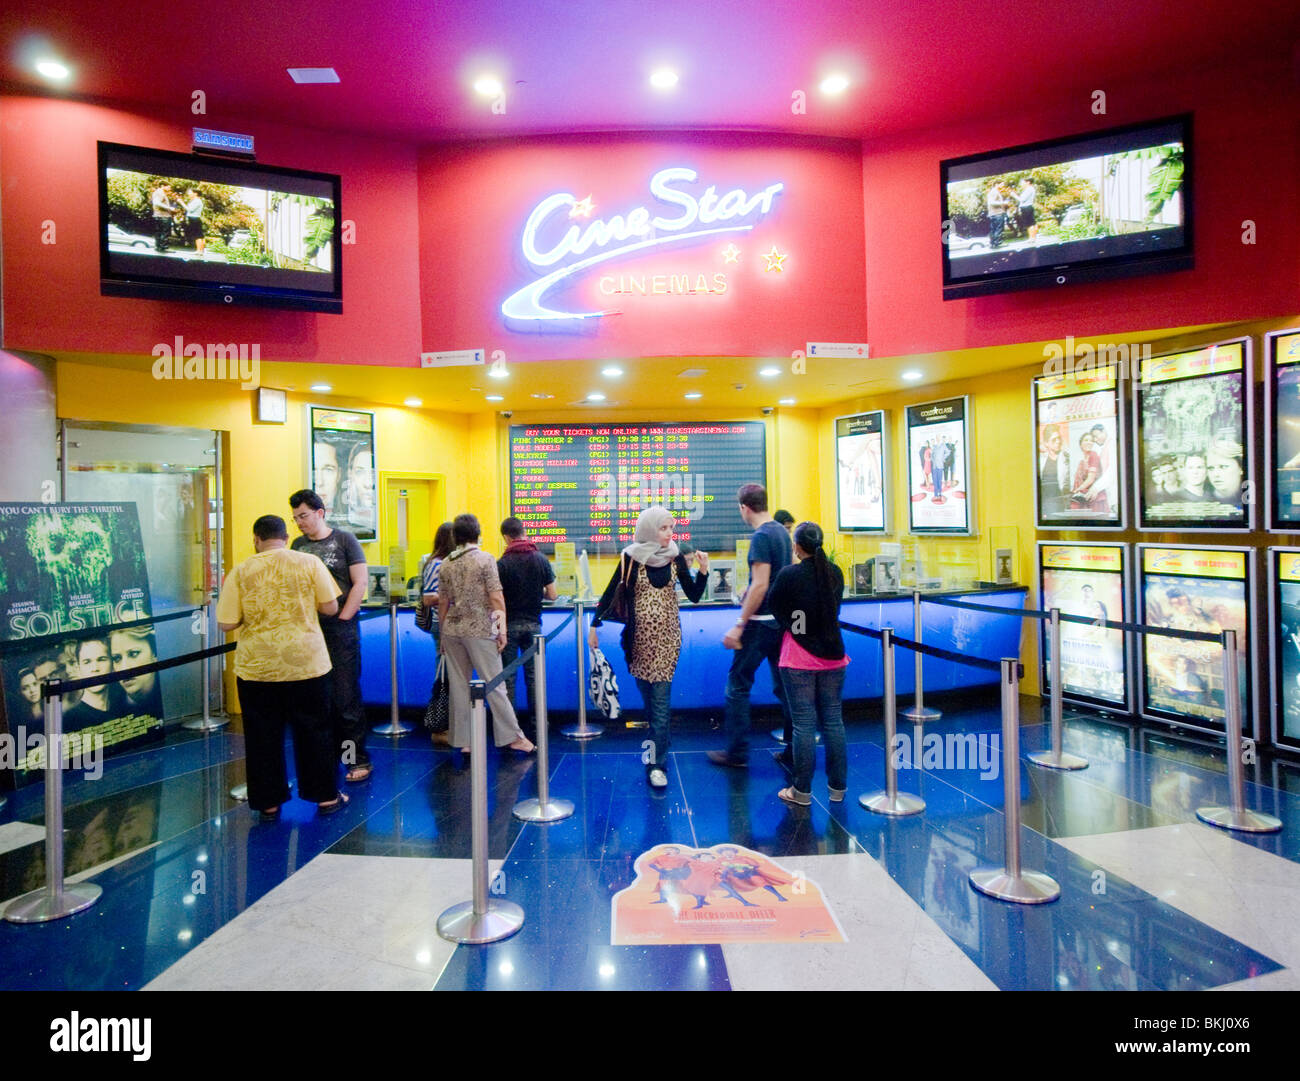 Cinema complex In Dubai Stock Photo